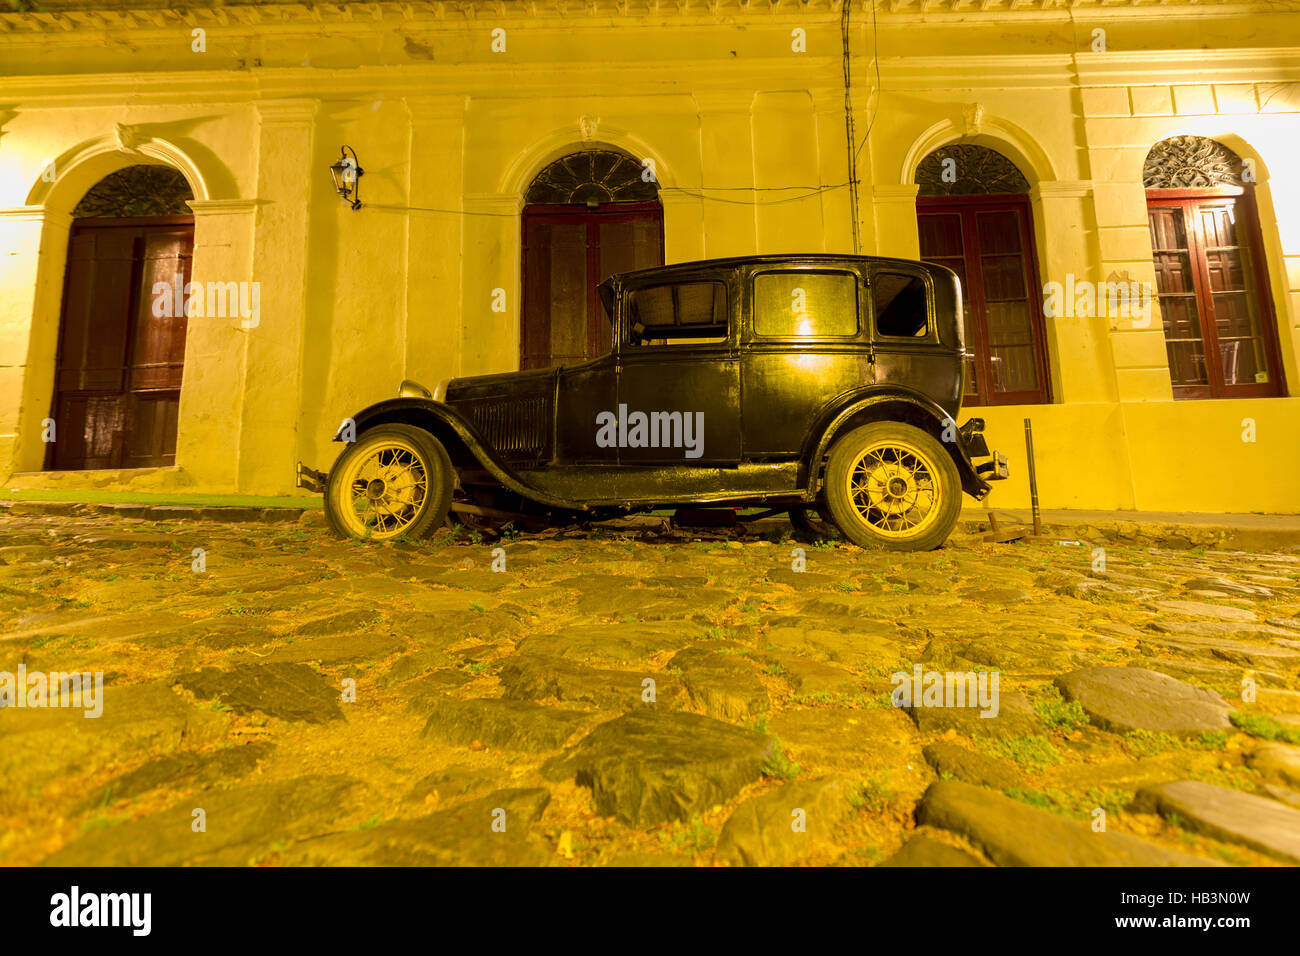 Photo de nuit vintage car dans la rue la nuit. Quartier historique de Colonia, ville du patrimoine mondial de l'UNESCO. L'Uruguay 2014 Banque D'Images